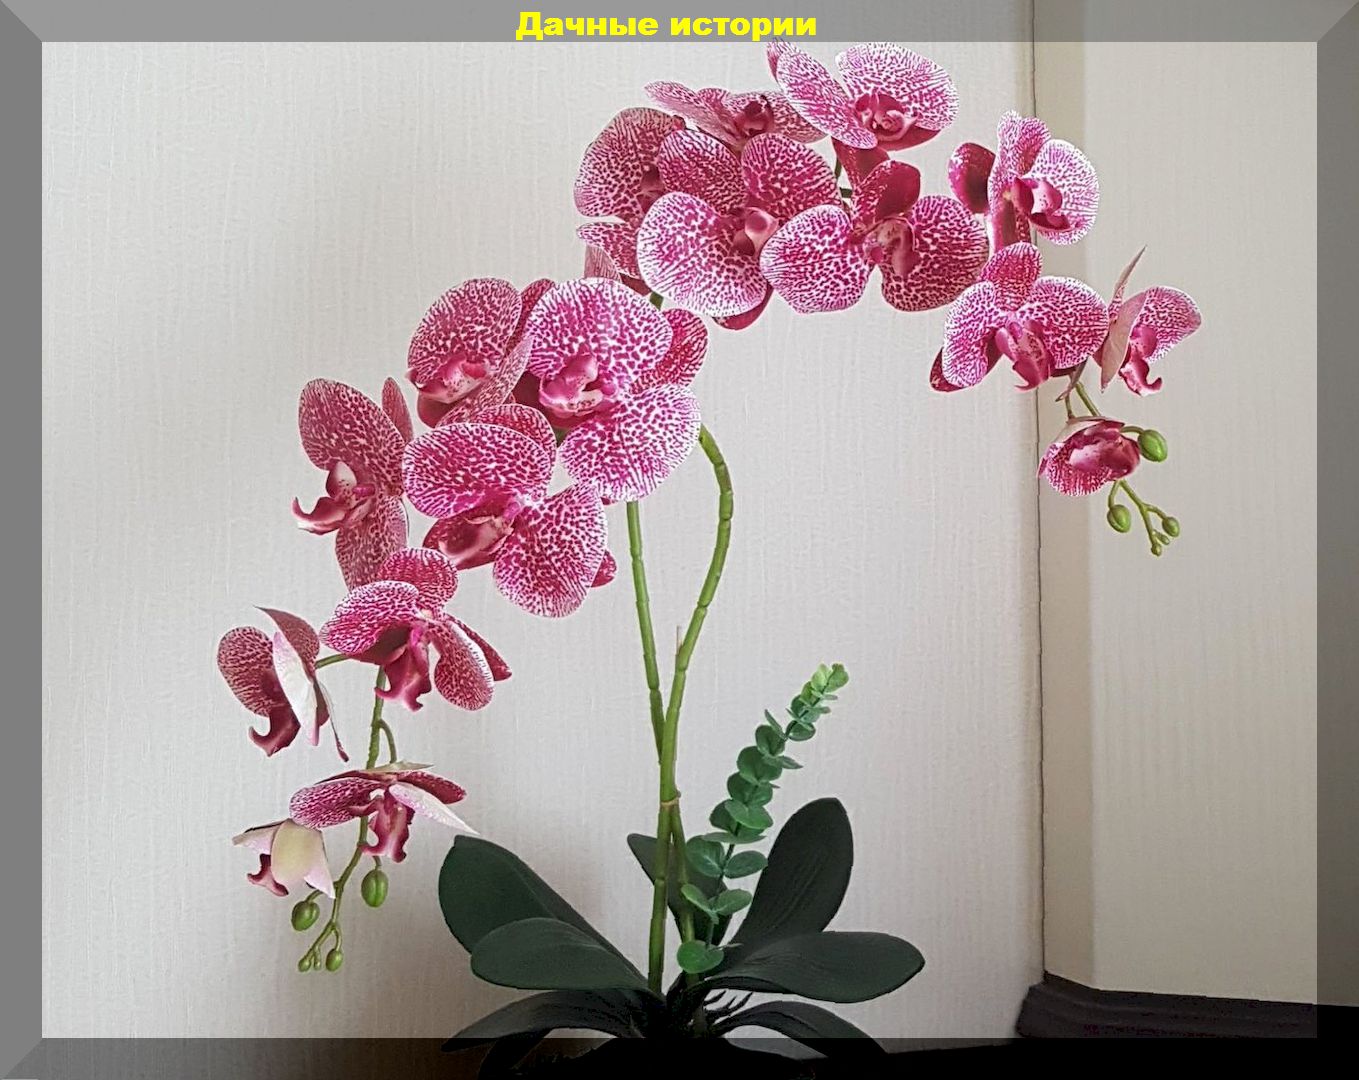 Почему орхидею нельзя ставить рядом с рассадой и прочие секреты ухода за орхидеей: цветок будет радовать и не навредит рассаде